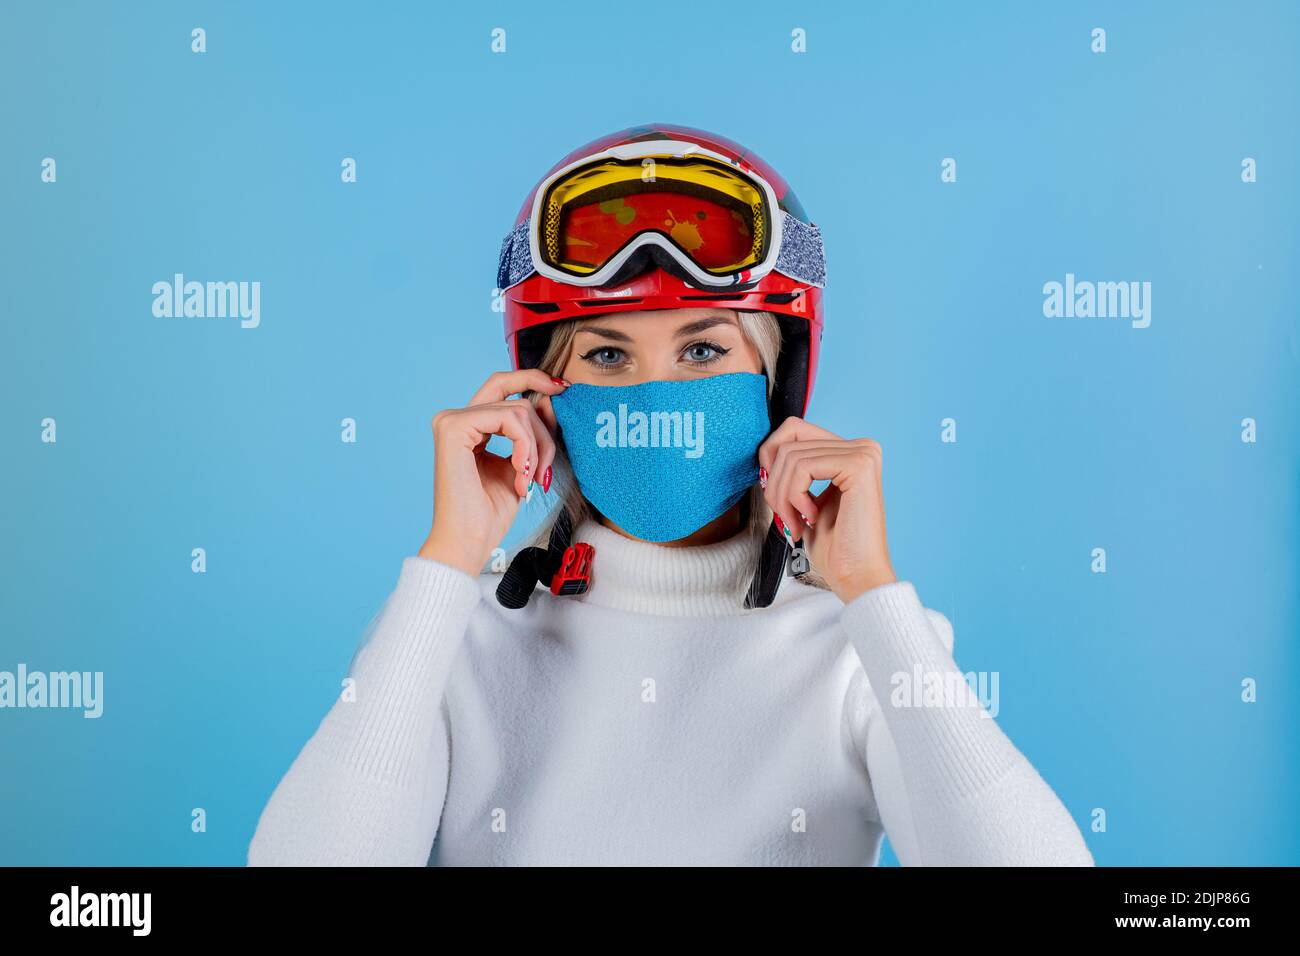 Nahaufnahme Porträt eines Mädchen Skifahrer trägt eine leichte blu Schutzmaske, Helm und Brille. Ein Snowboarder auf hellem blu-Hintergrund. Covid19 Coronavir Stockfoto